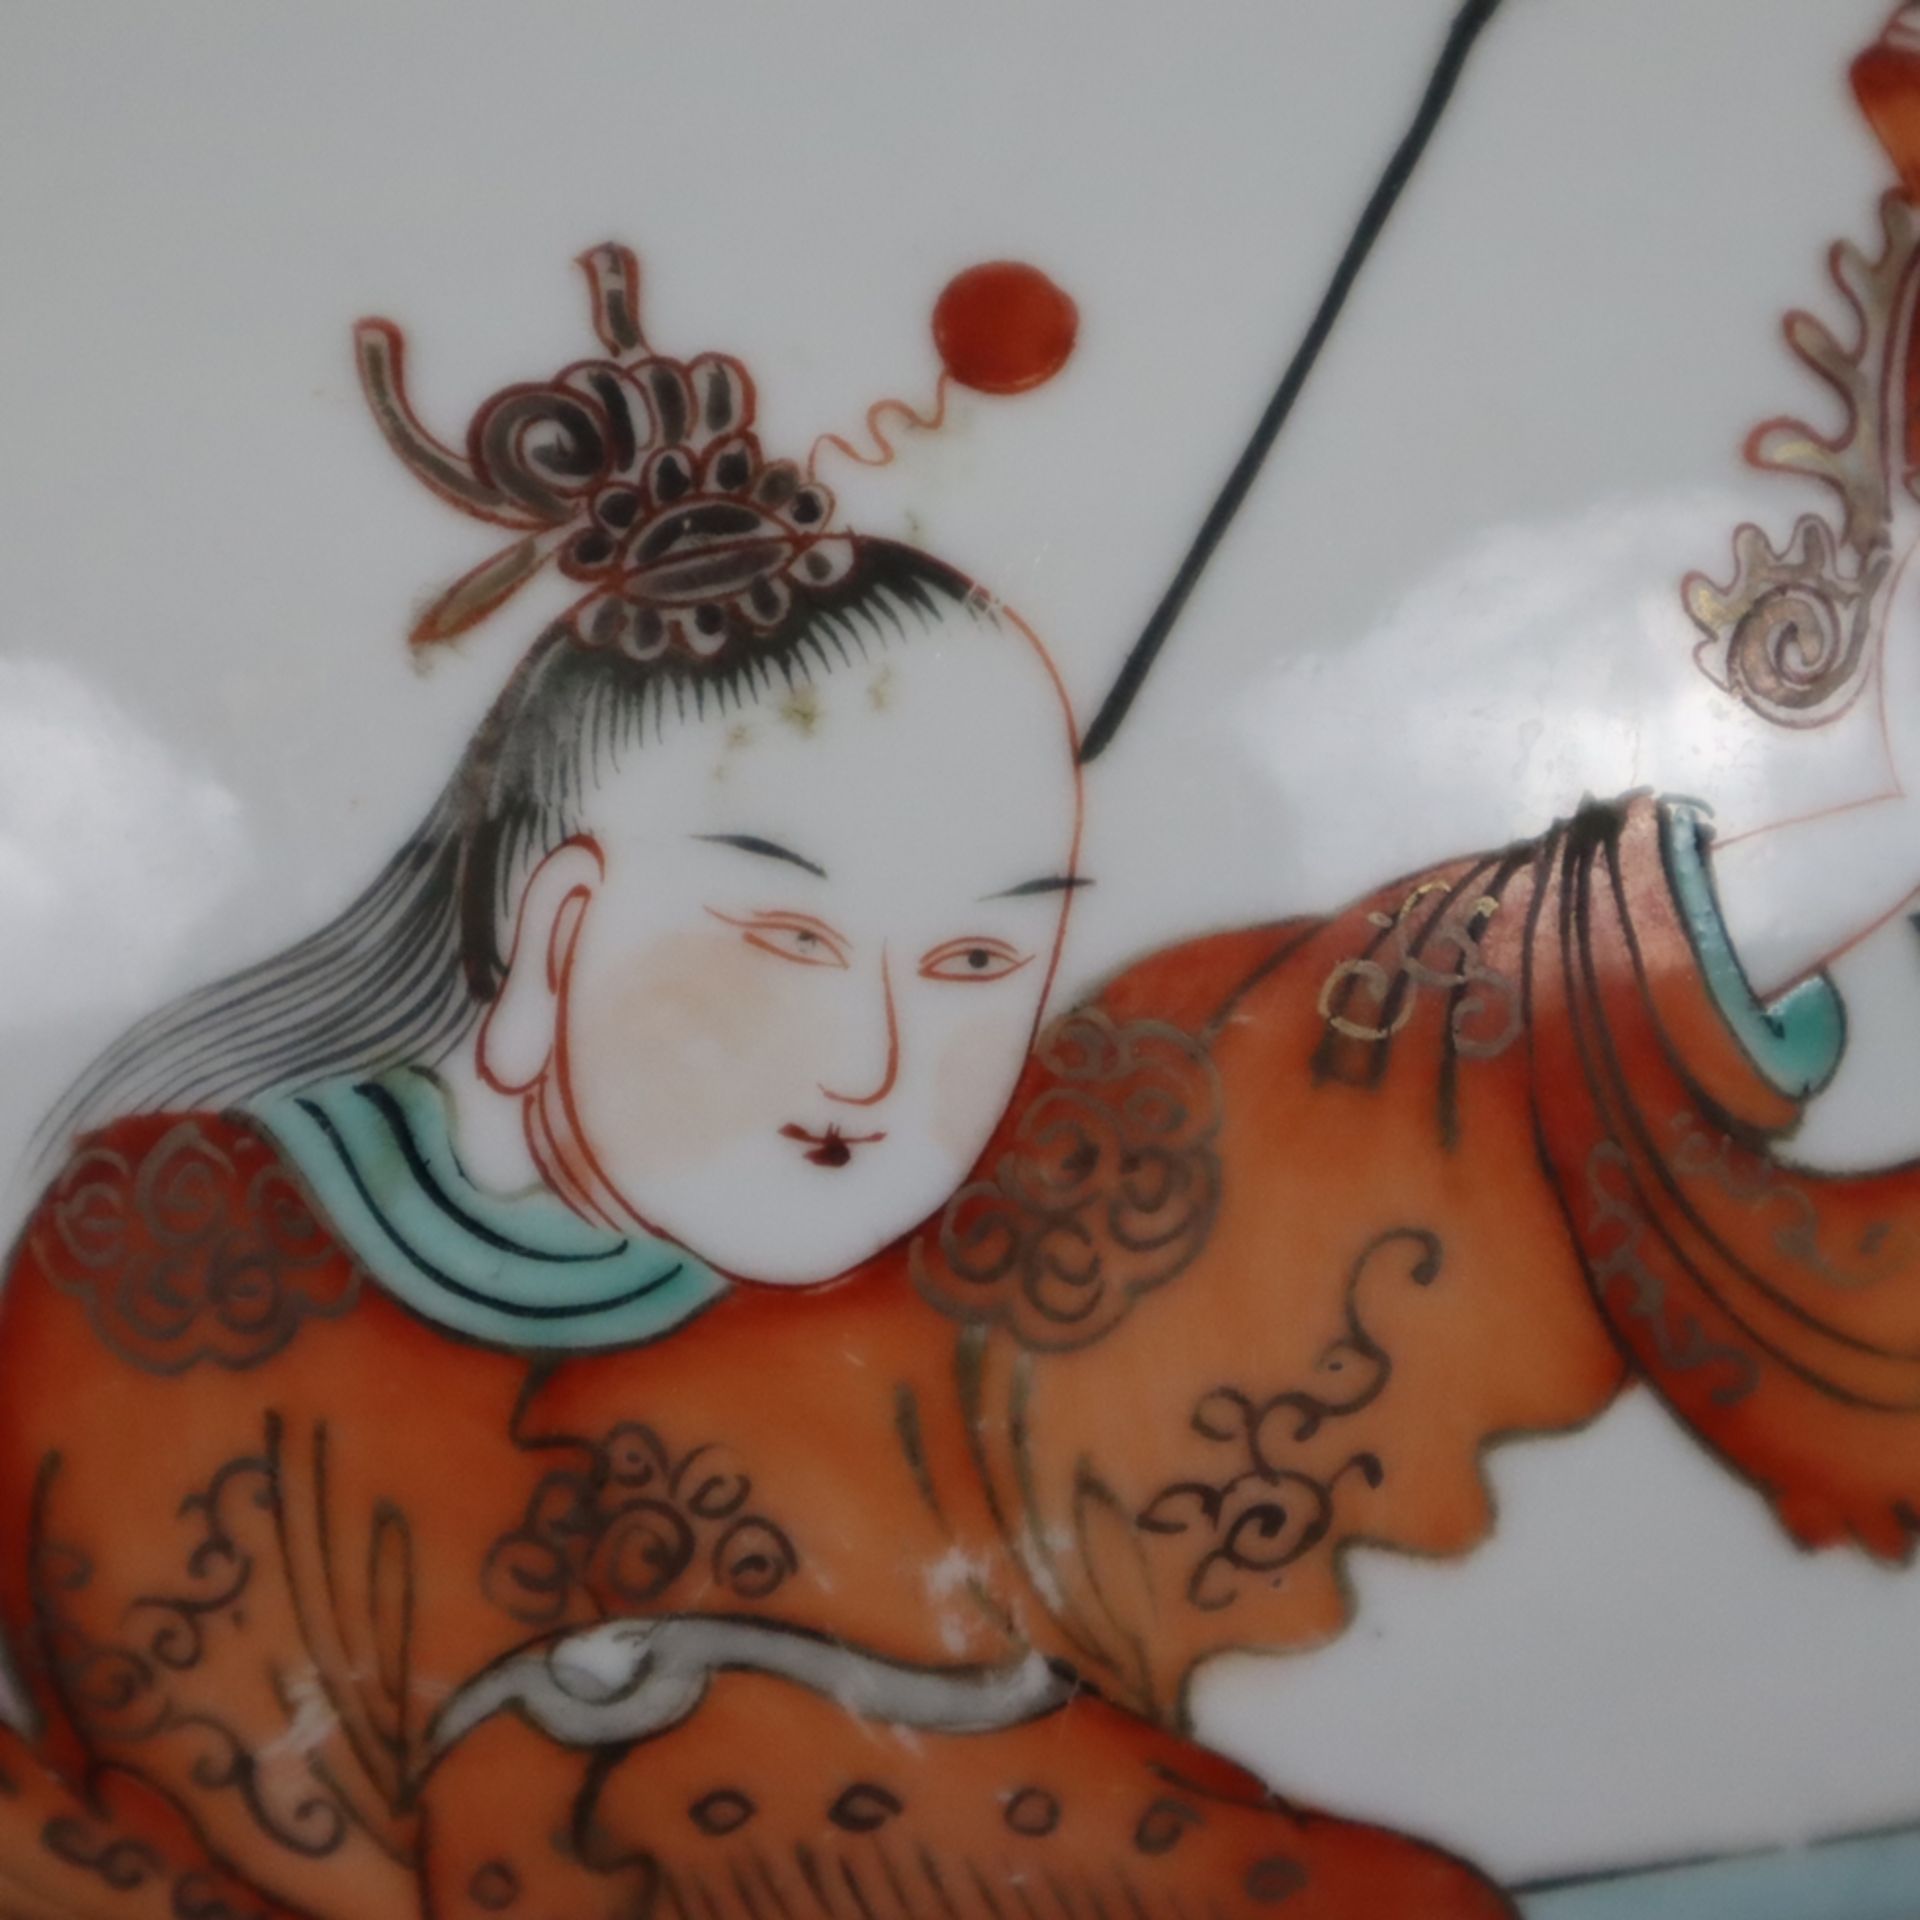 Porzellan-Deckeltopf - China, kugeliger Korpus mit Steckdeckel, auf der Wandung mehrfigurige szenis - Image 9 of 15